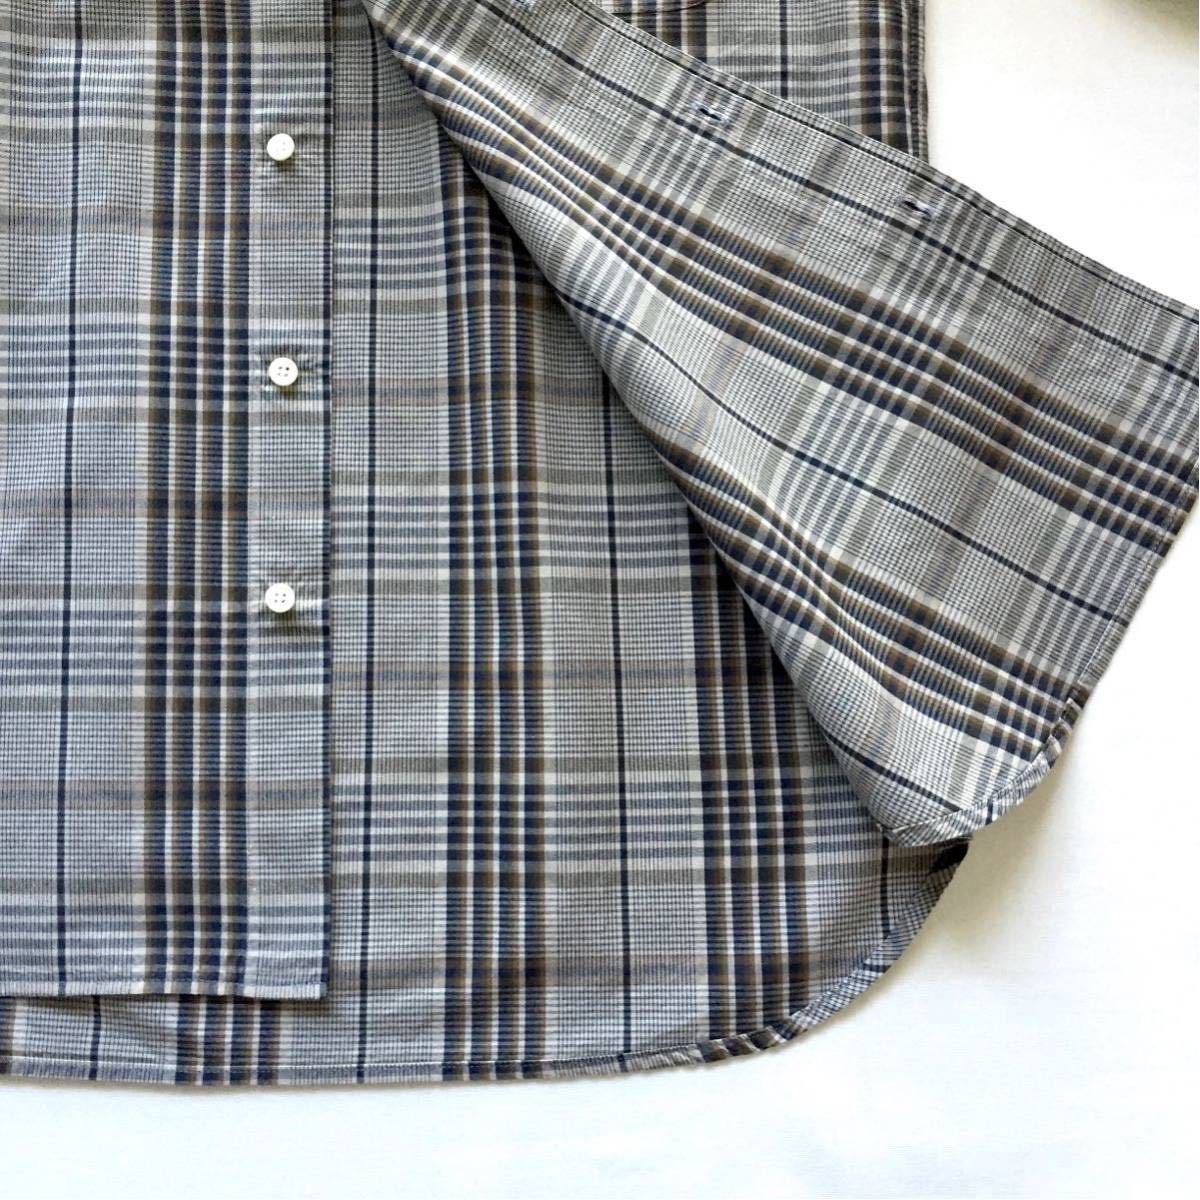  как новый BEAMS PLUS Button down Plaid shirt Beams плюс кнопка down проверка рубашка S размер рубашка с длинным рукавом сделано в Японии JAPANMADE BEAMS+